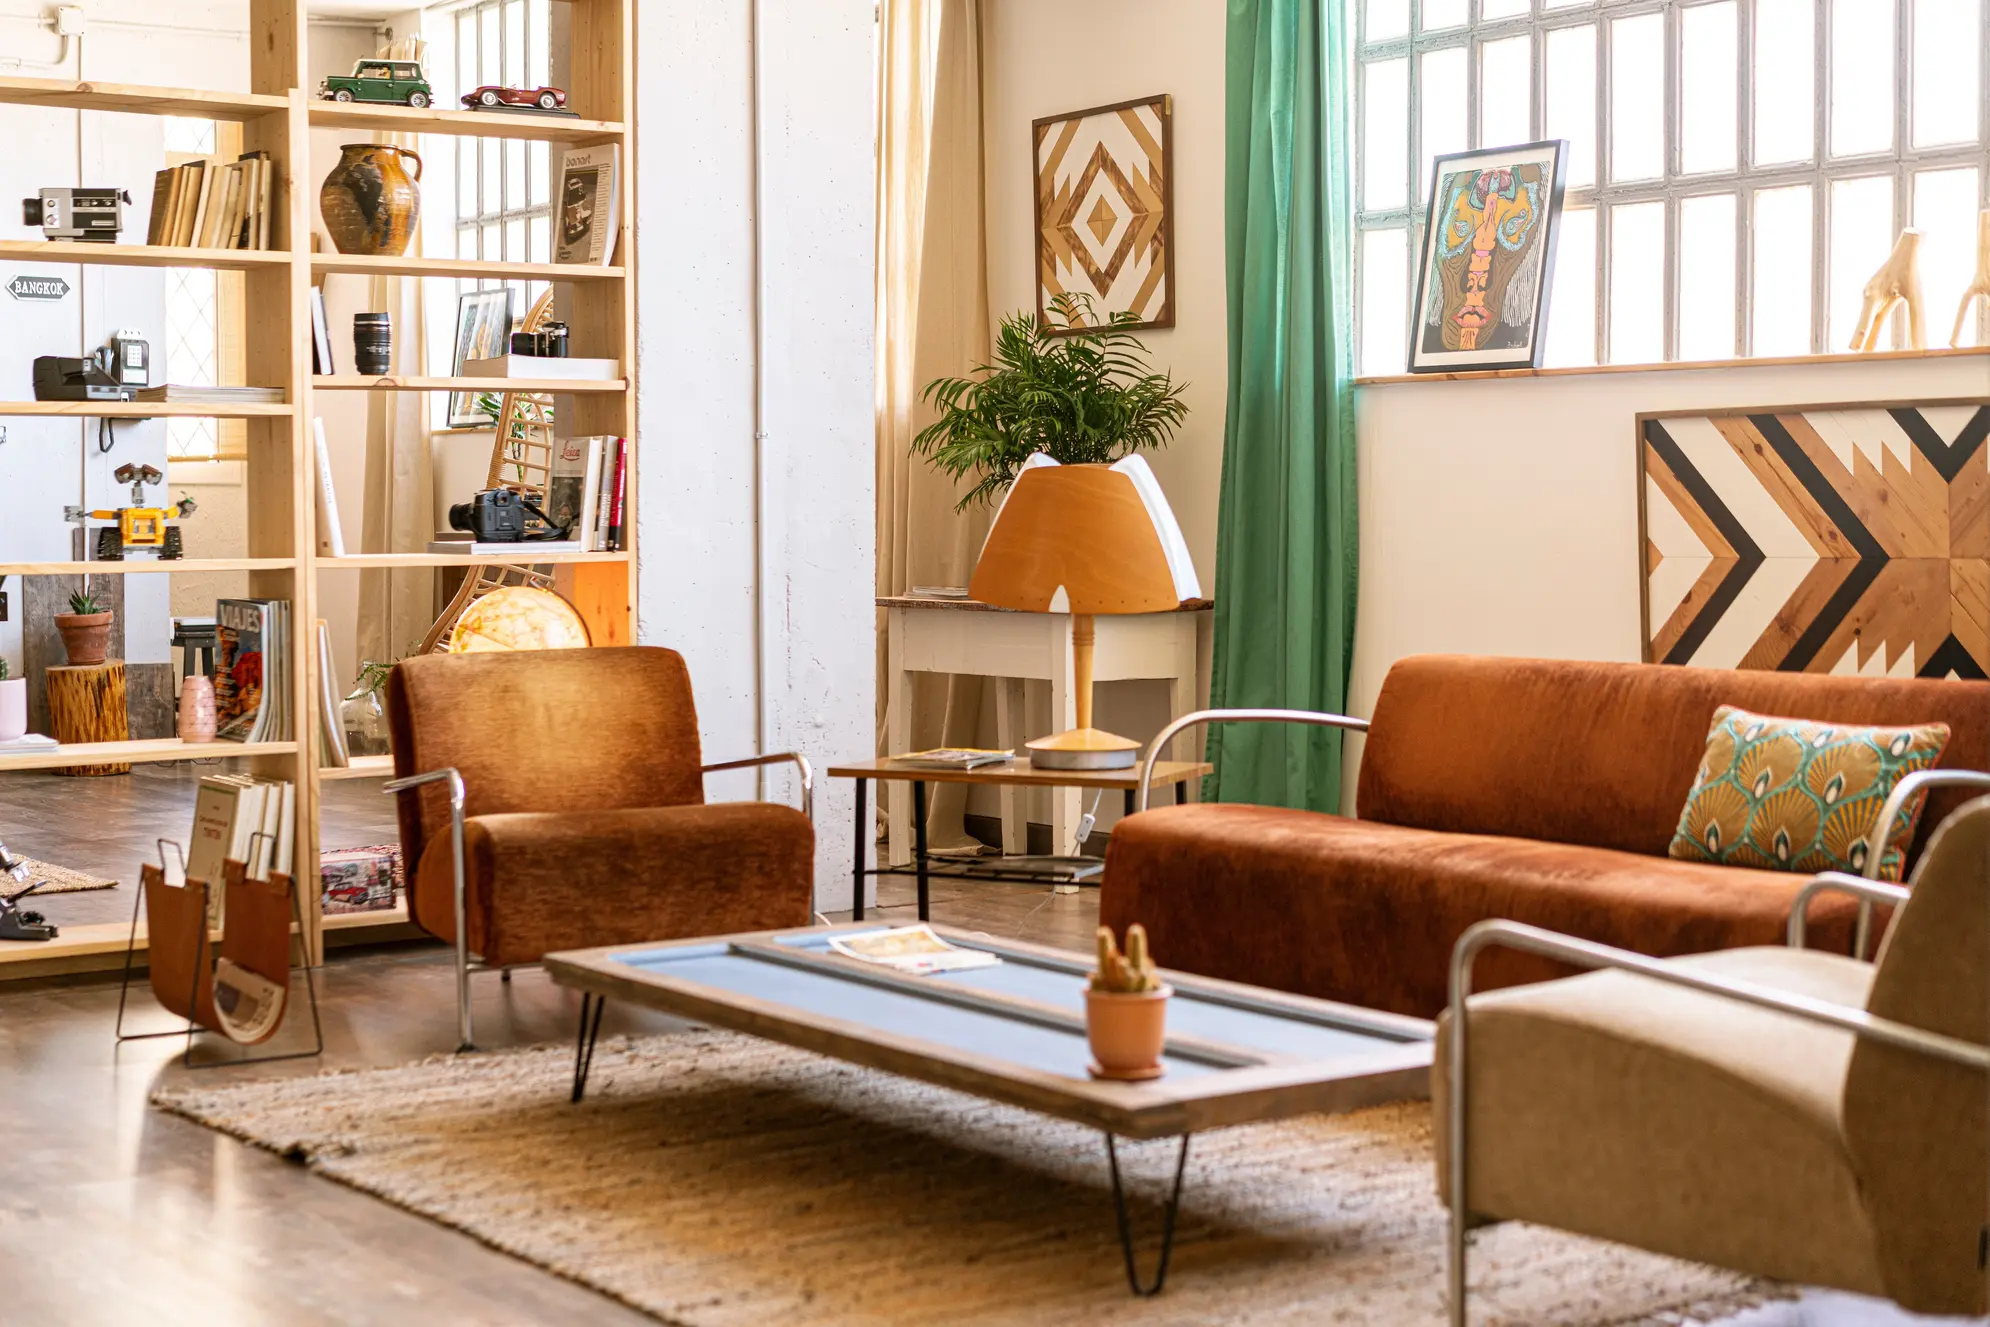 Salon w kolorze brązowym z fotelem, styl vintage. Element charakterystyczny: fotel